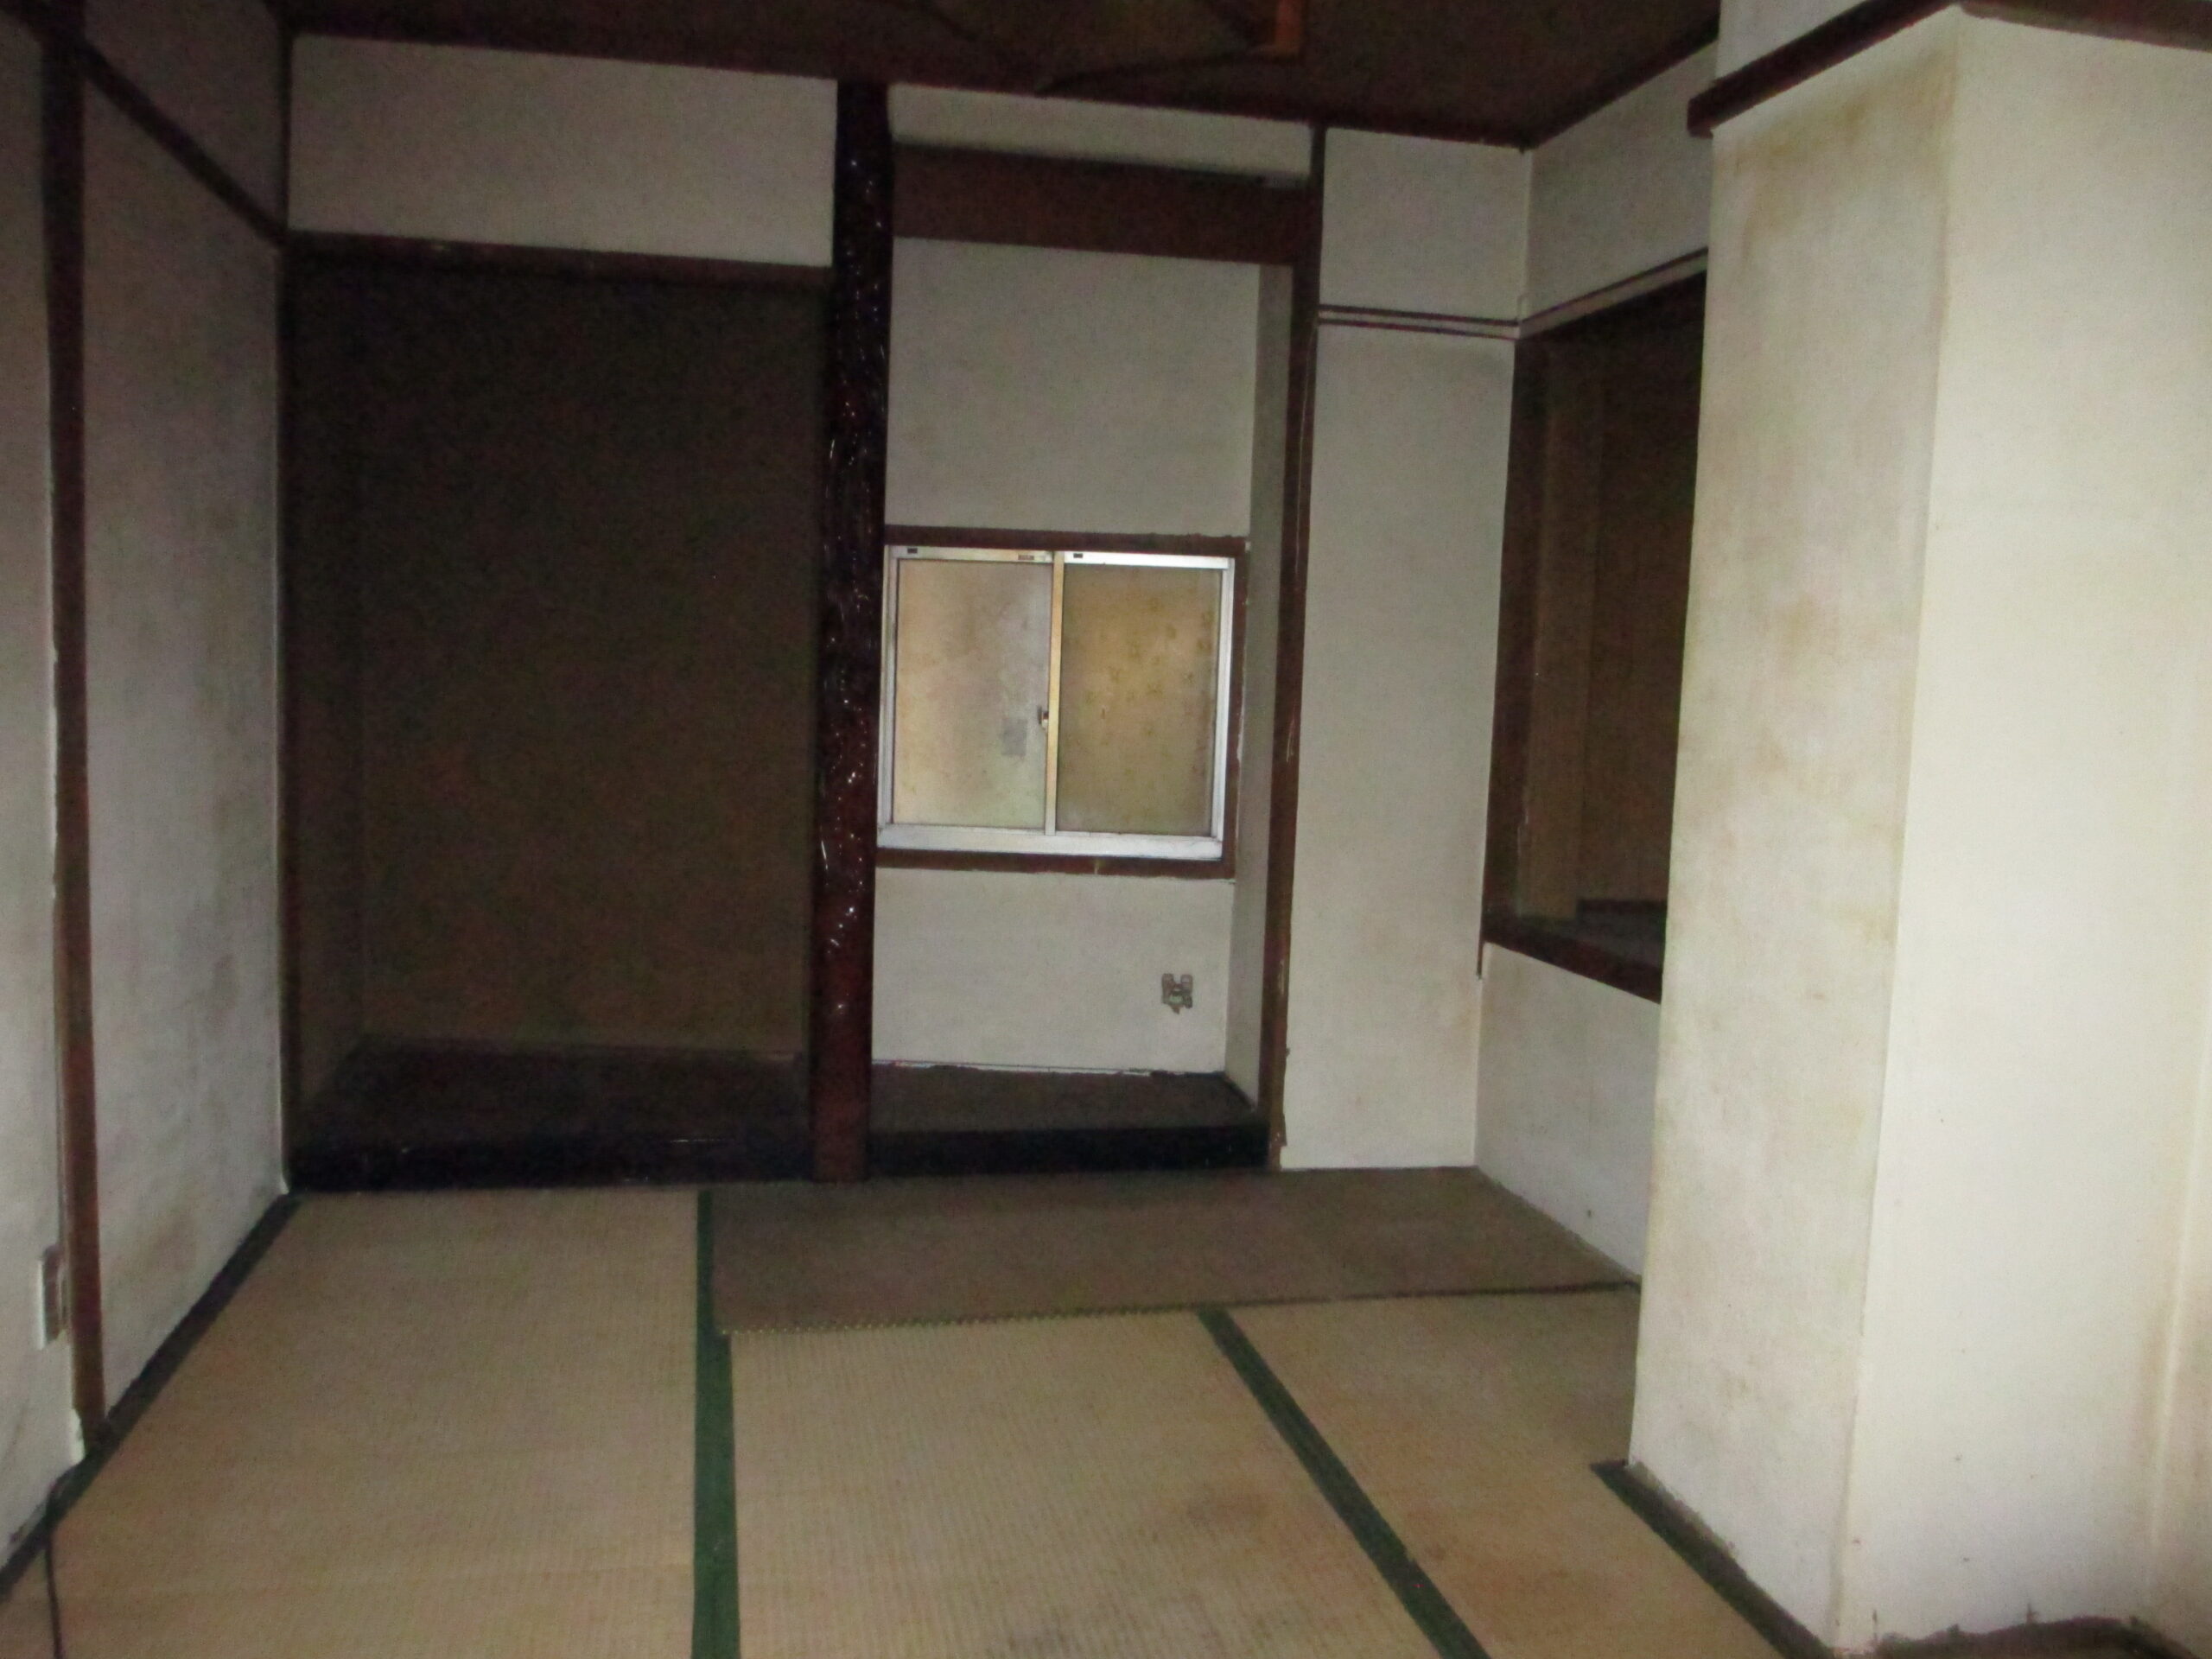 和室スペース有店舗として使用する場合は、和室を従業員の休憩スペースとして活用することもできます‼。